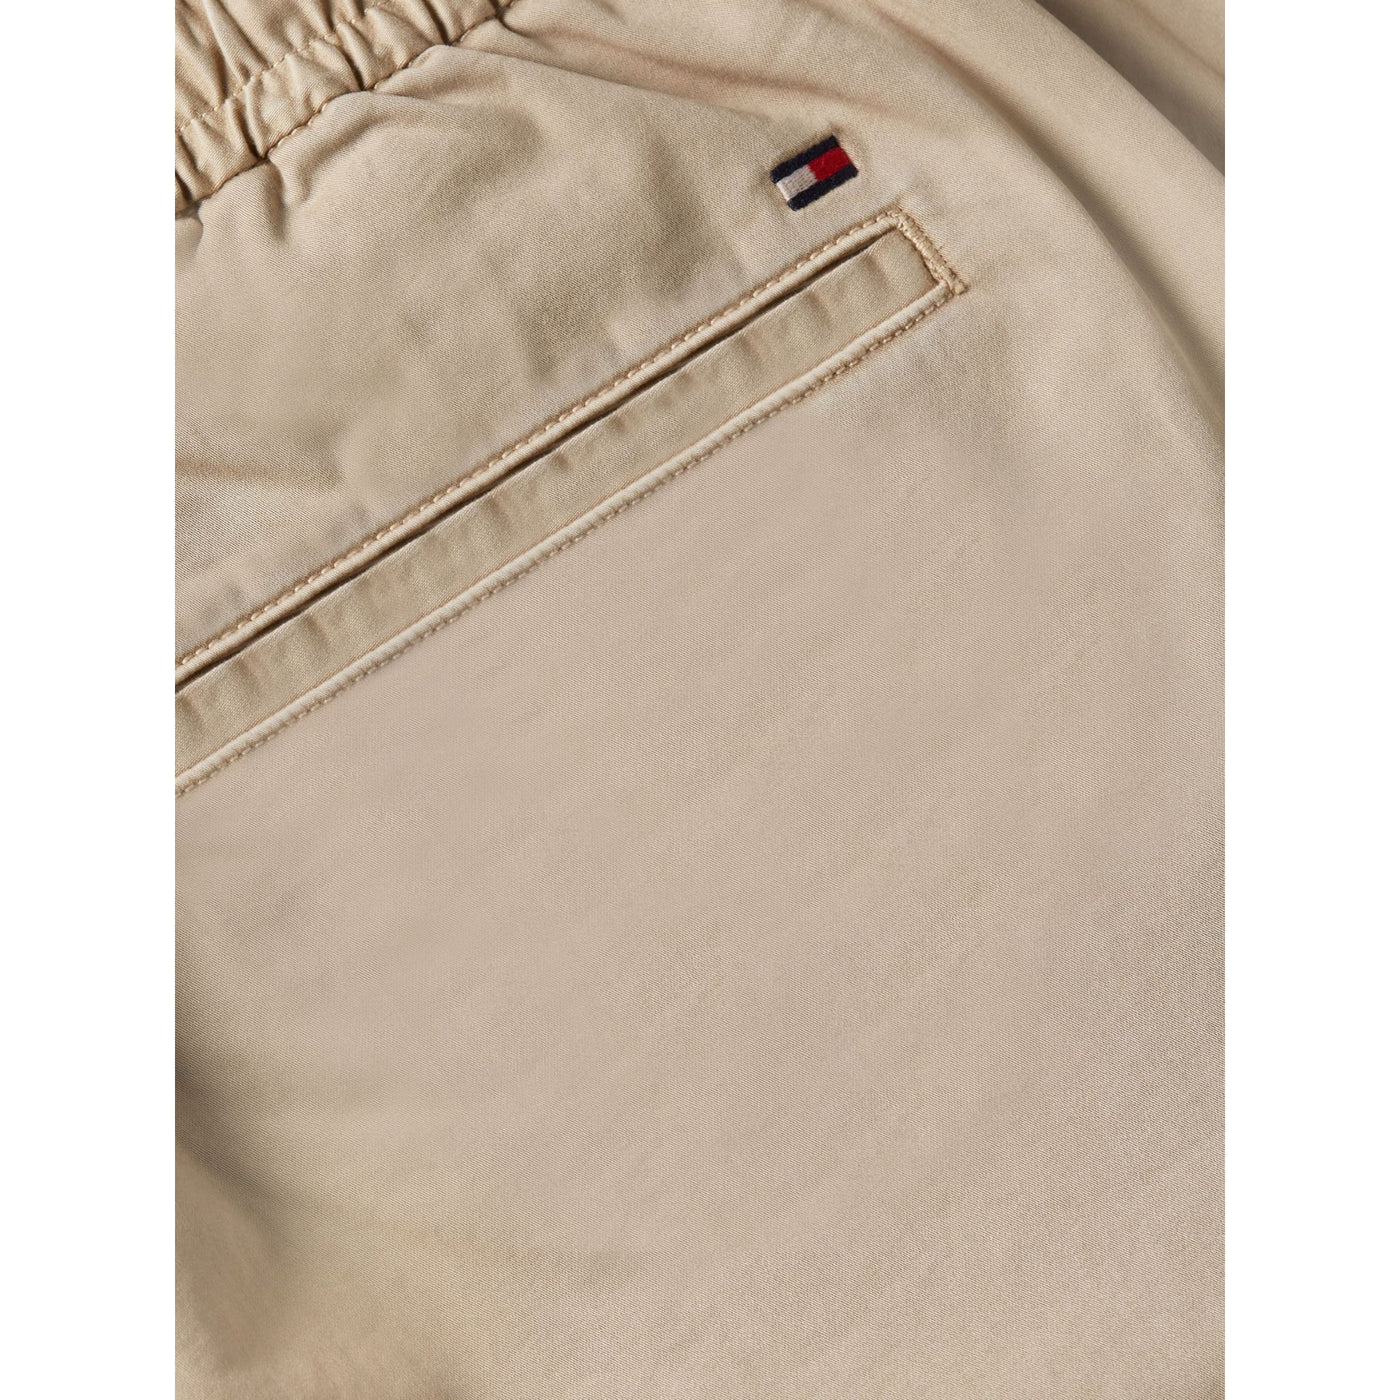 Pantalone da uomo beige firmato Tommy Hilfiger dettaglio tasca retro